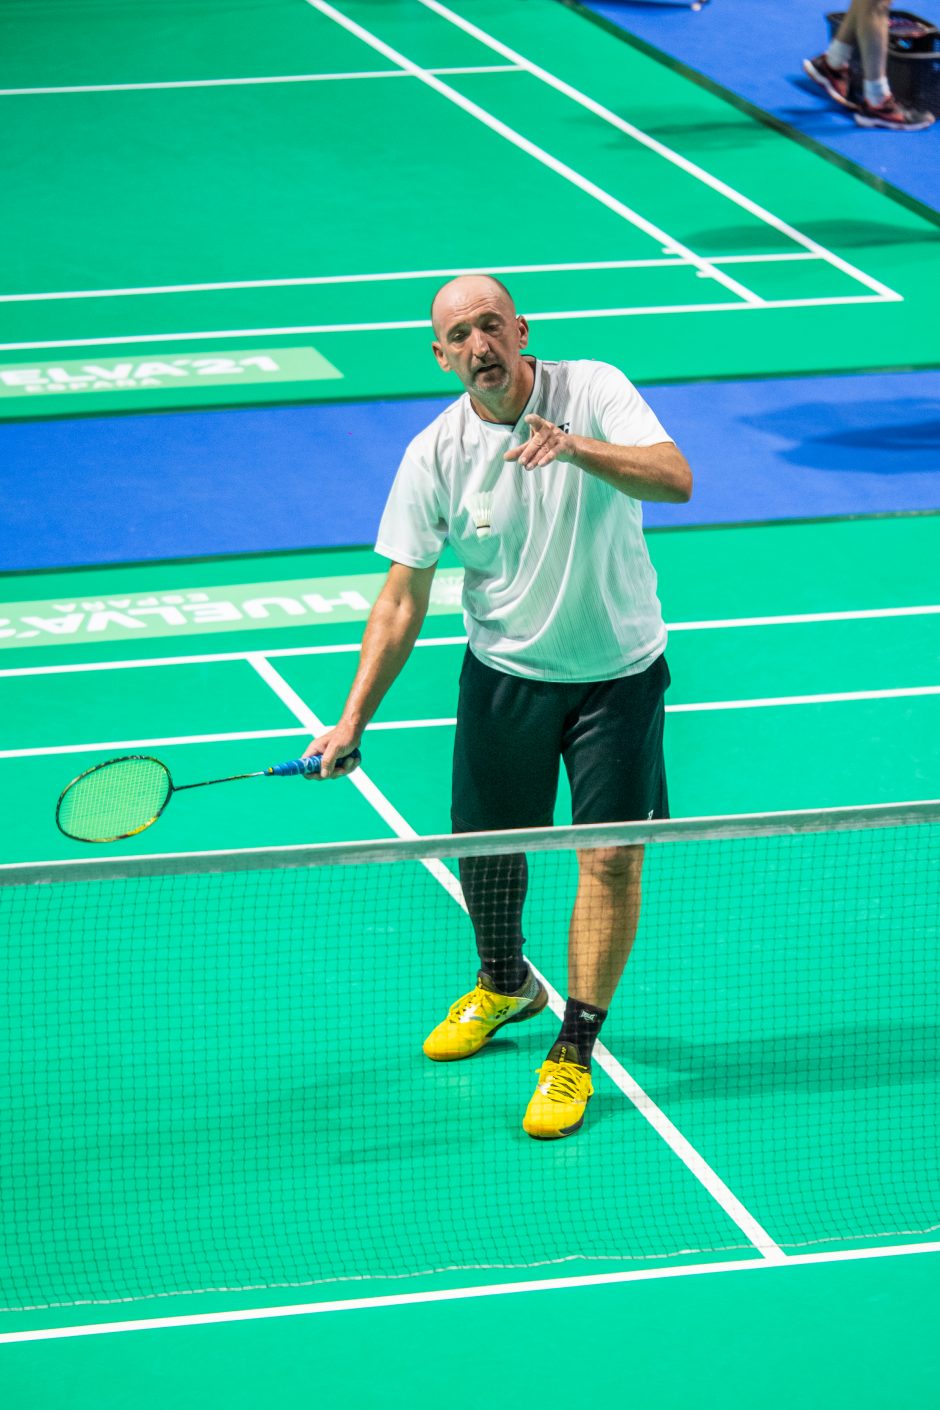 Pasaulio veteranų badmintono čempionate – rekordinis lietuvių pergalių skaičius